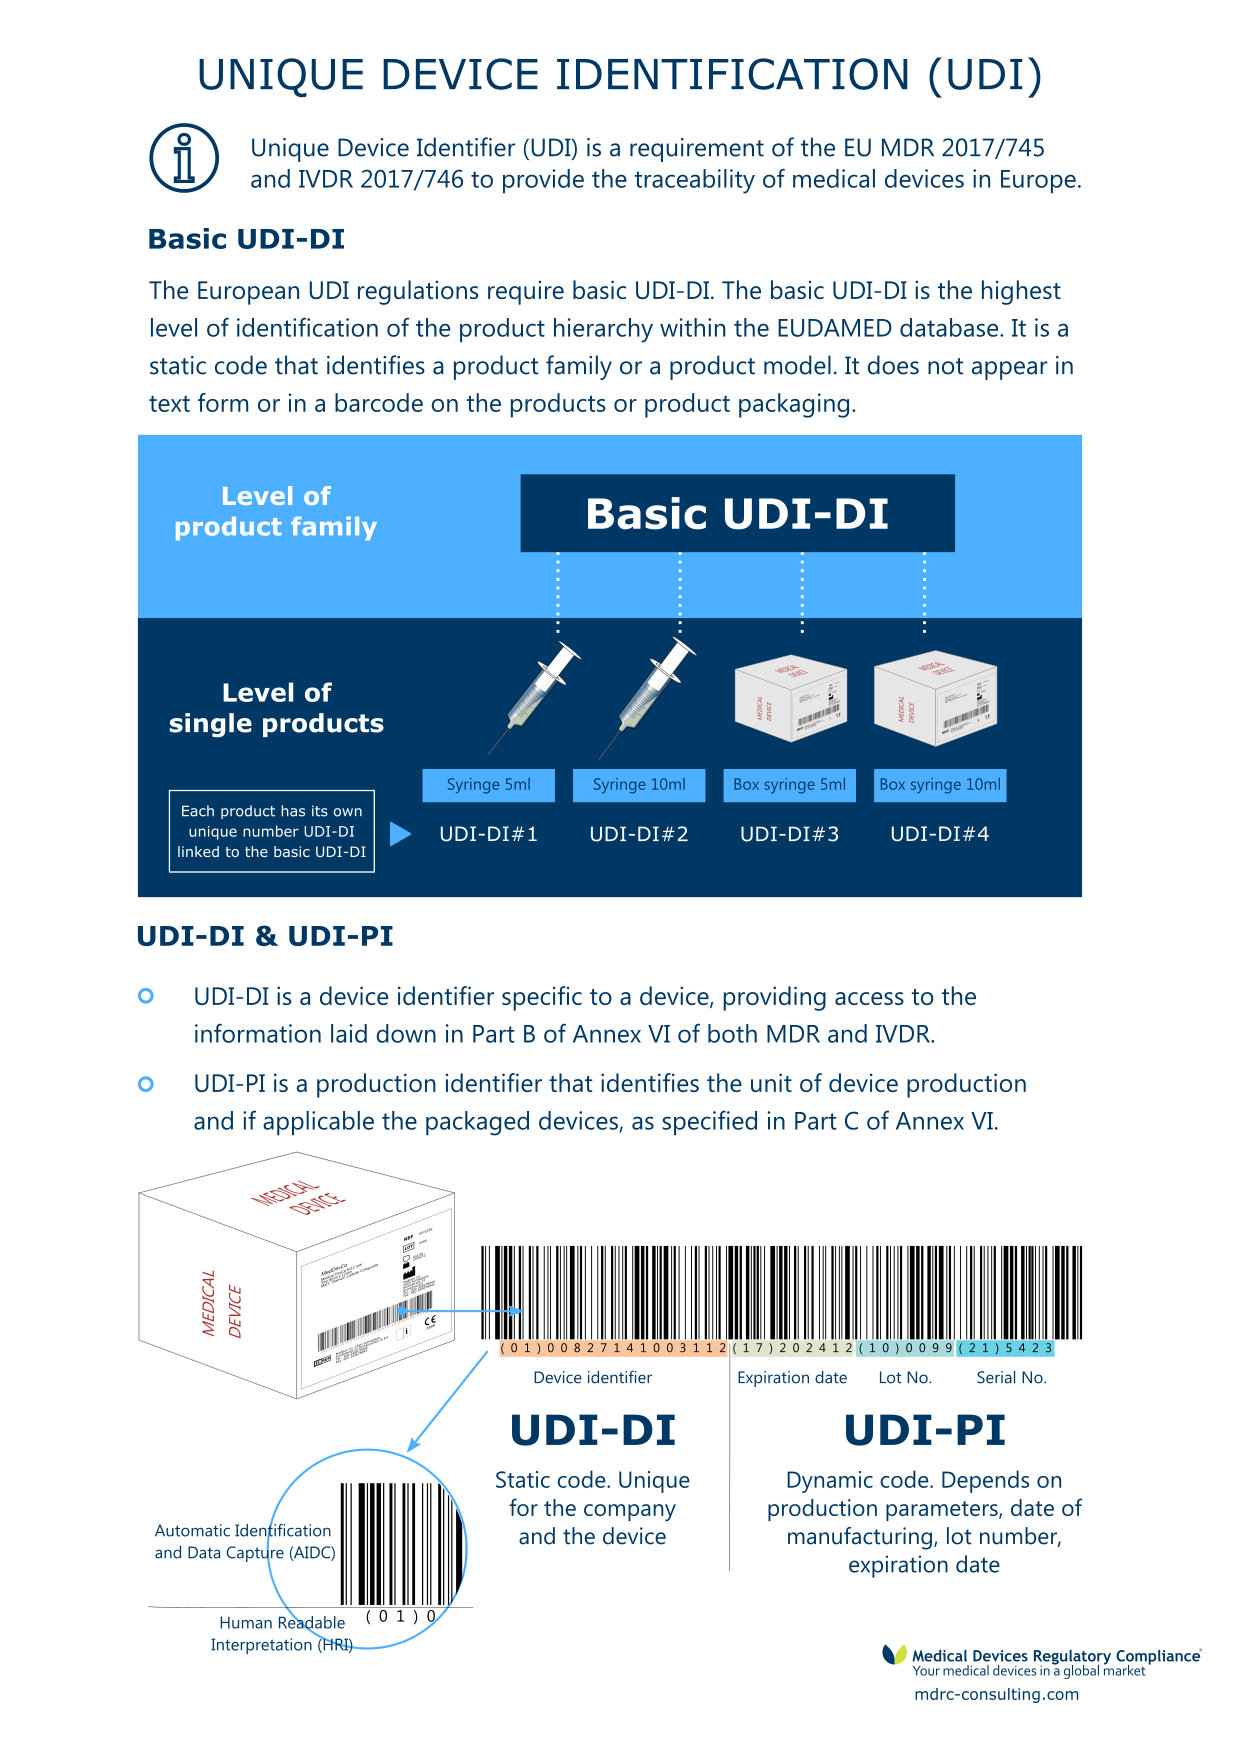 UDI and EUDAMED registration